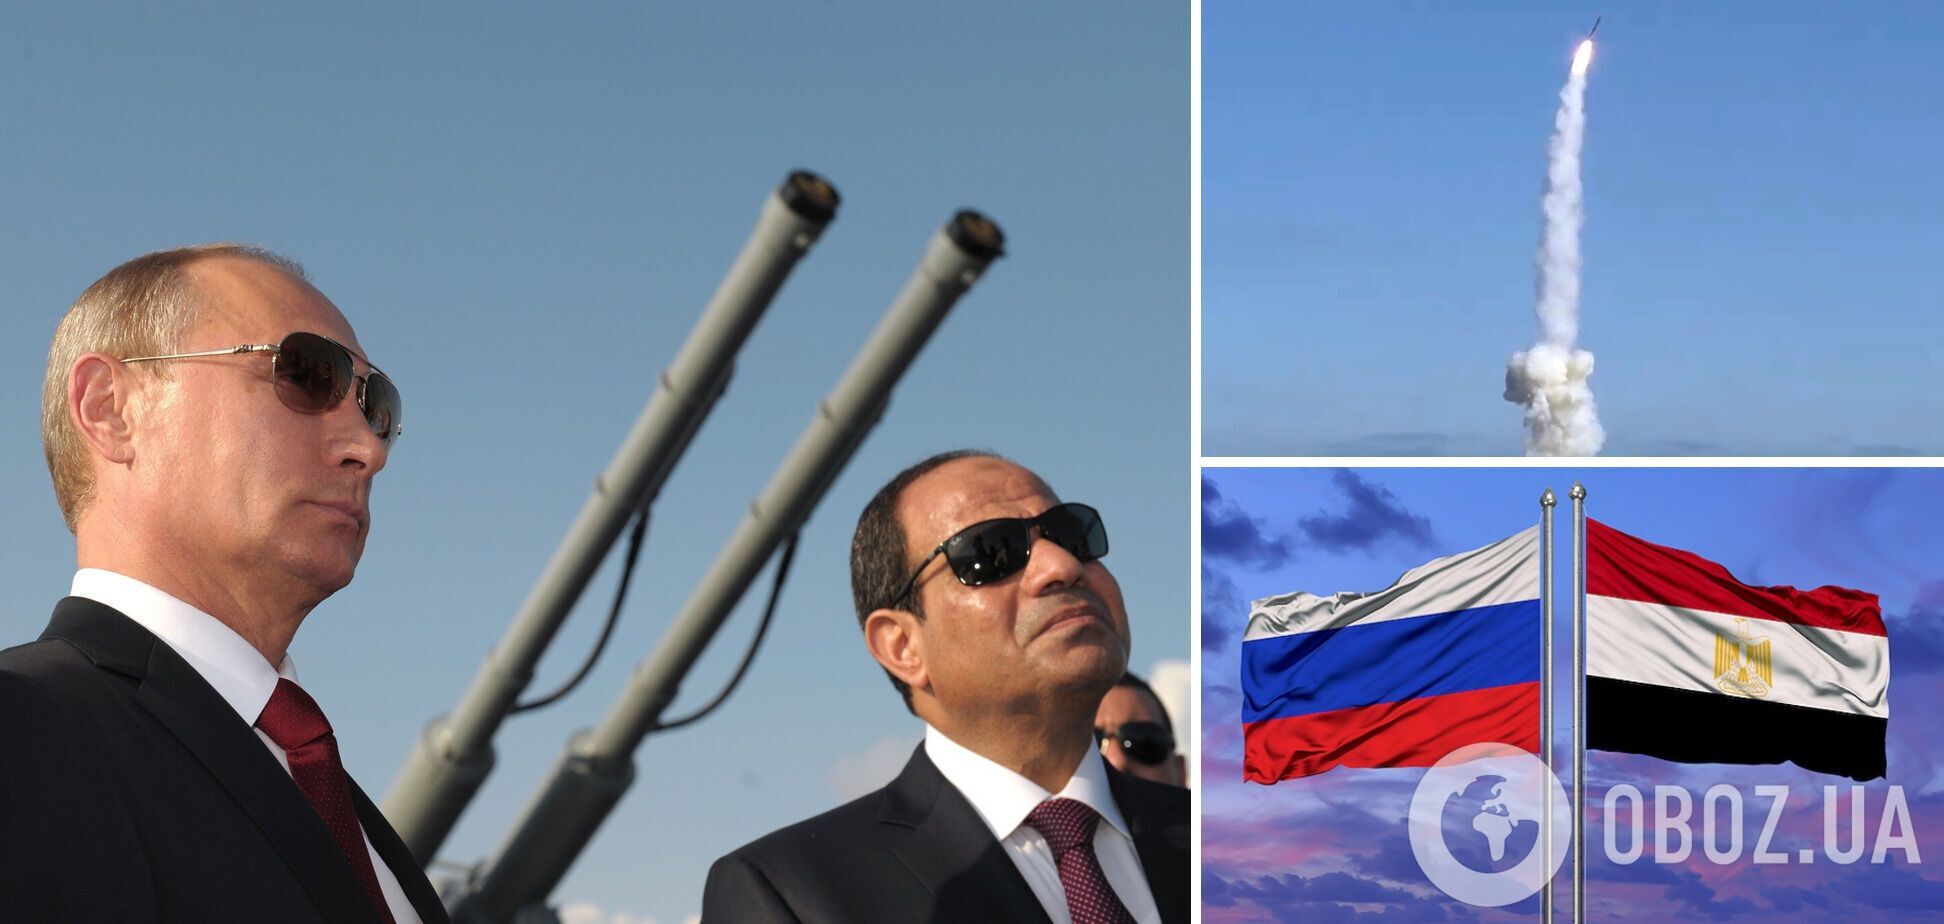 Єгипет планував надати Росії до 40 тис. ракет: витік секретних документів розкрив гучну схему – WP